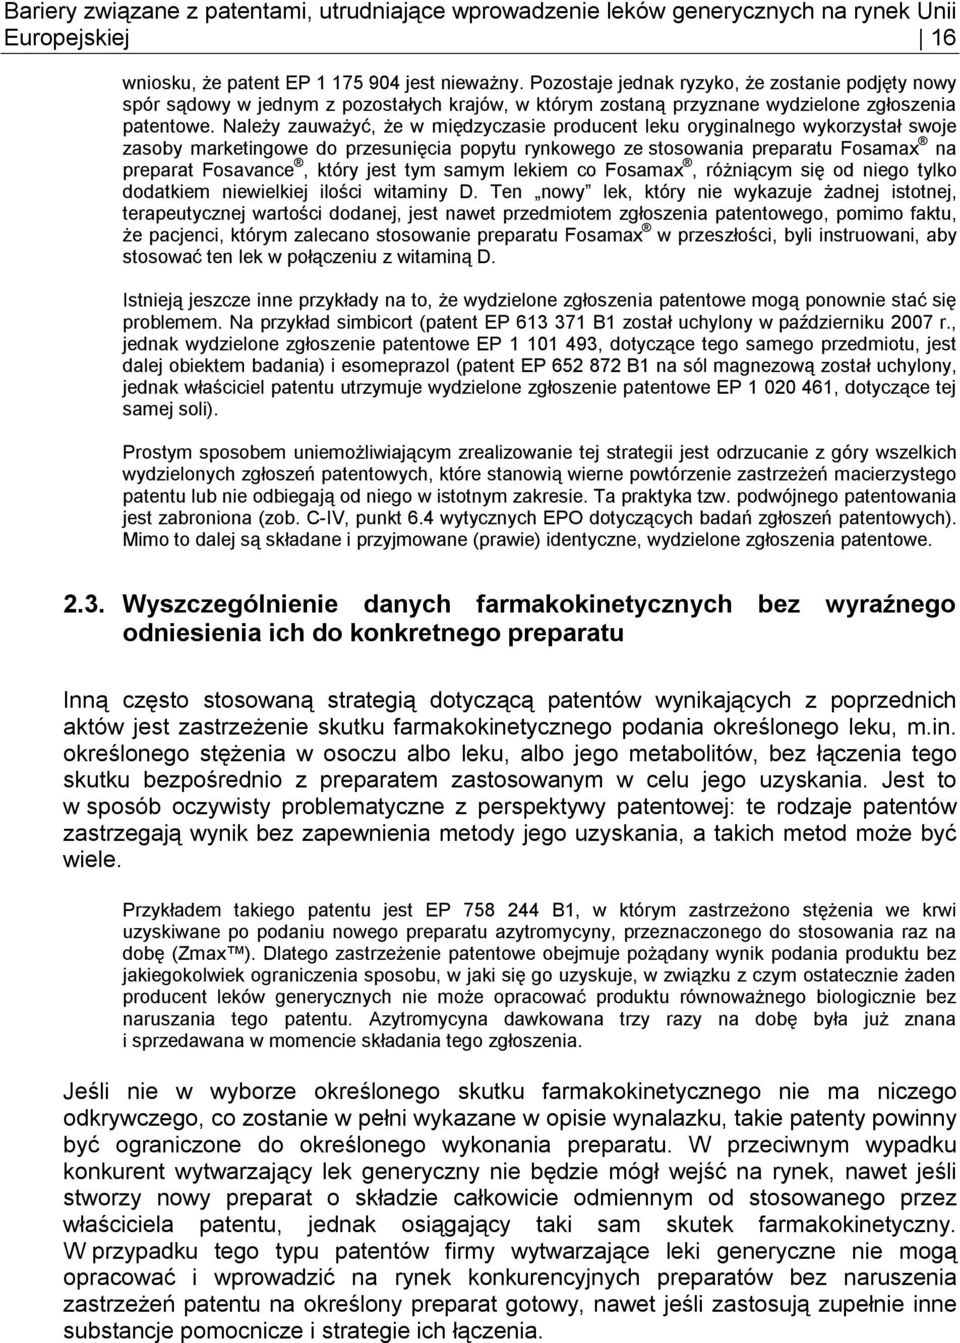 Bariery związane z patentami, utrudniające wprowadzenie leków generycznych  na rynek Unii Europejskiej - PDF Free Download